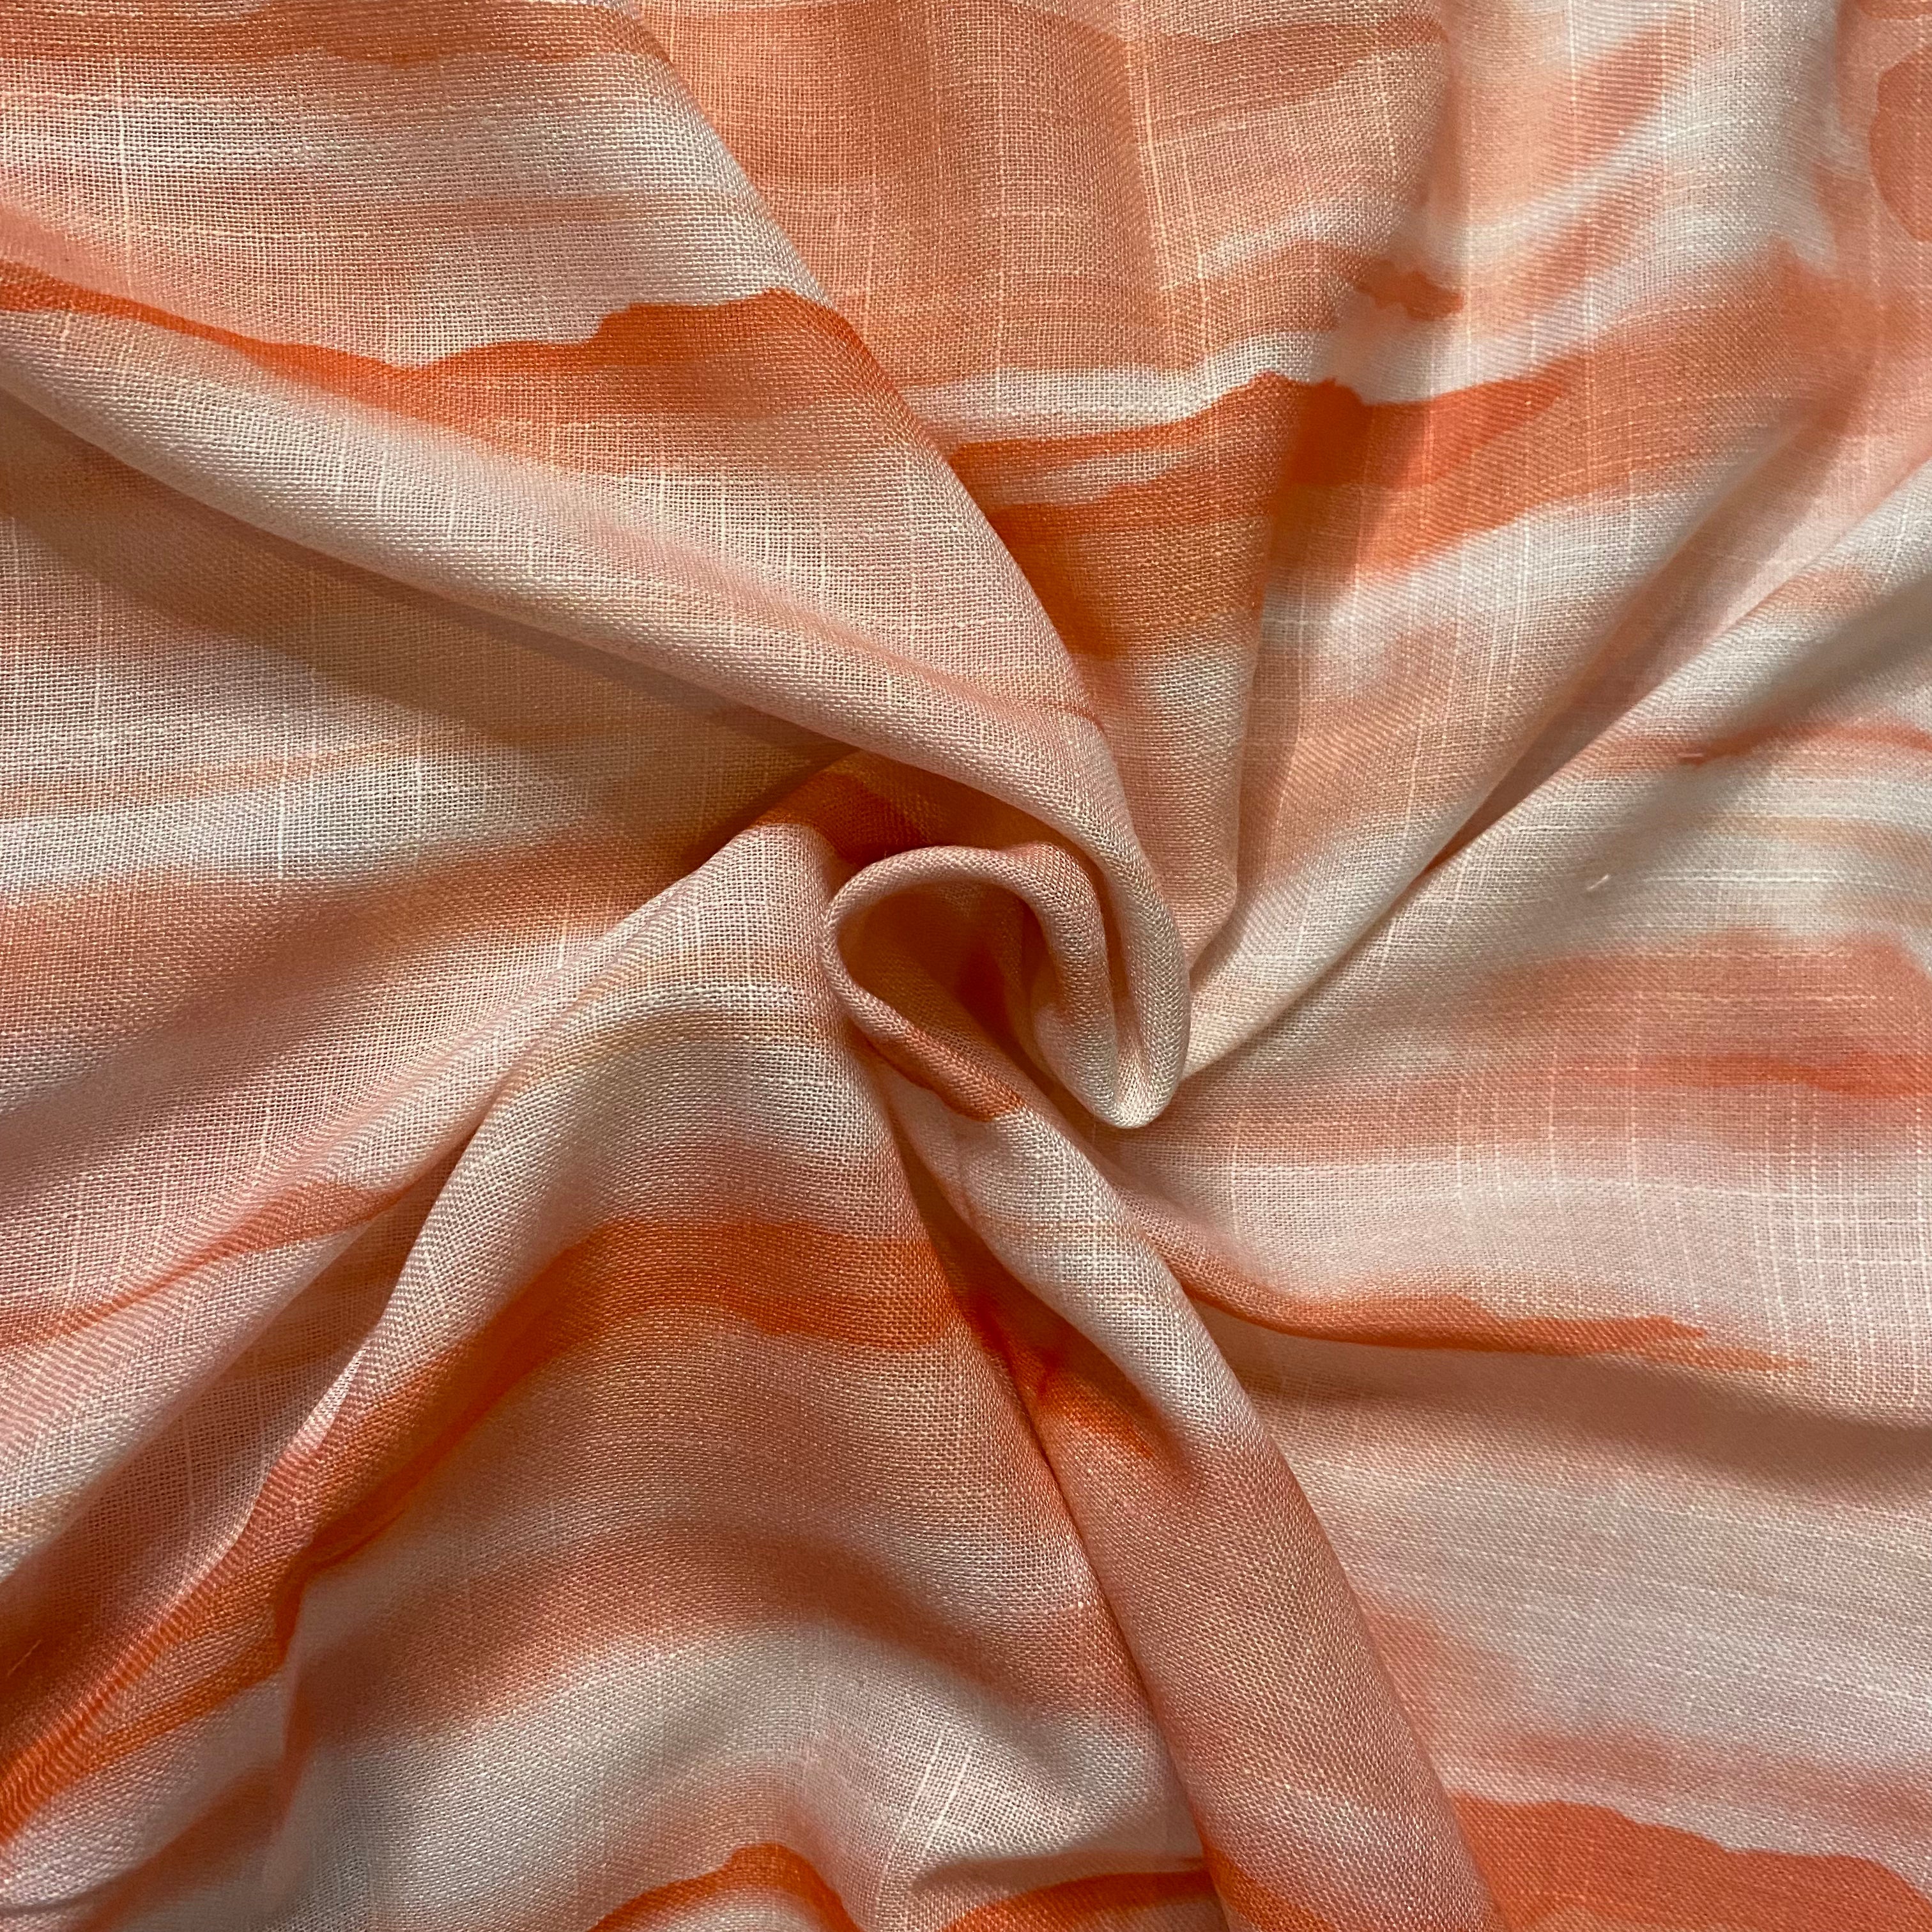 Best seller : Tie & Dye striped pattern on Cotton-Linen fabric per meter